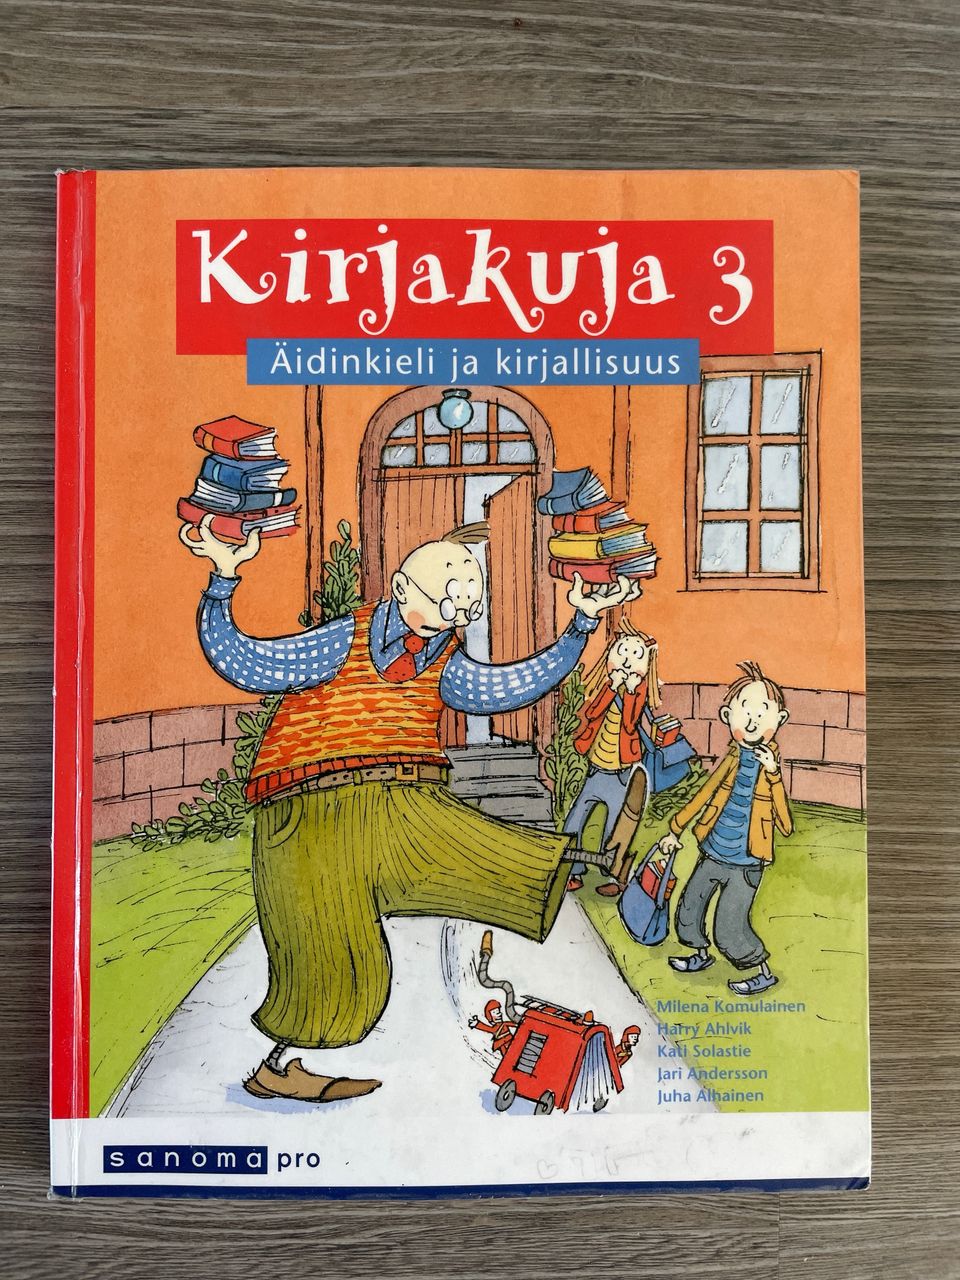 Suomenkielen kirja, Kirjakuja 3